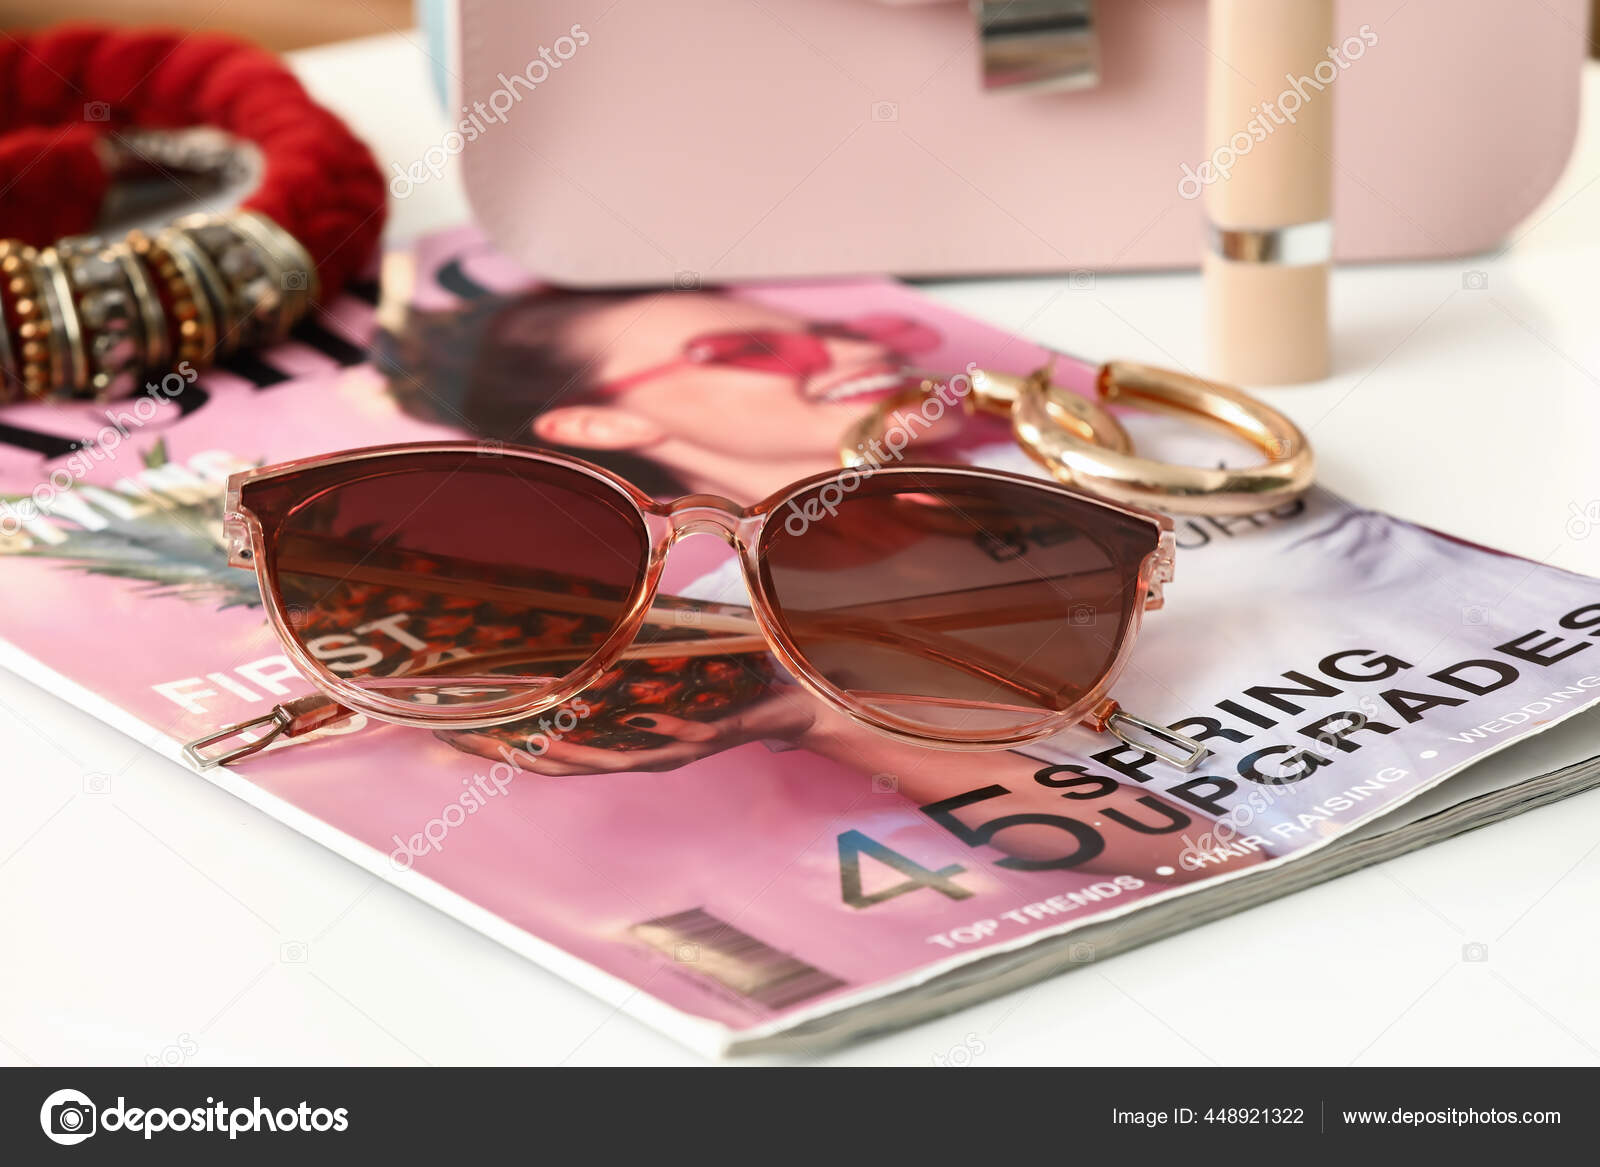 Female Accessories, Sun Glasses